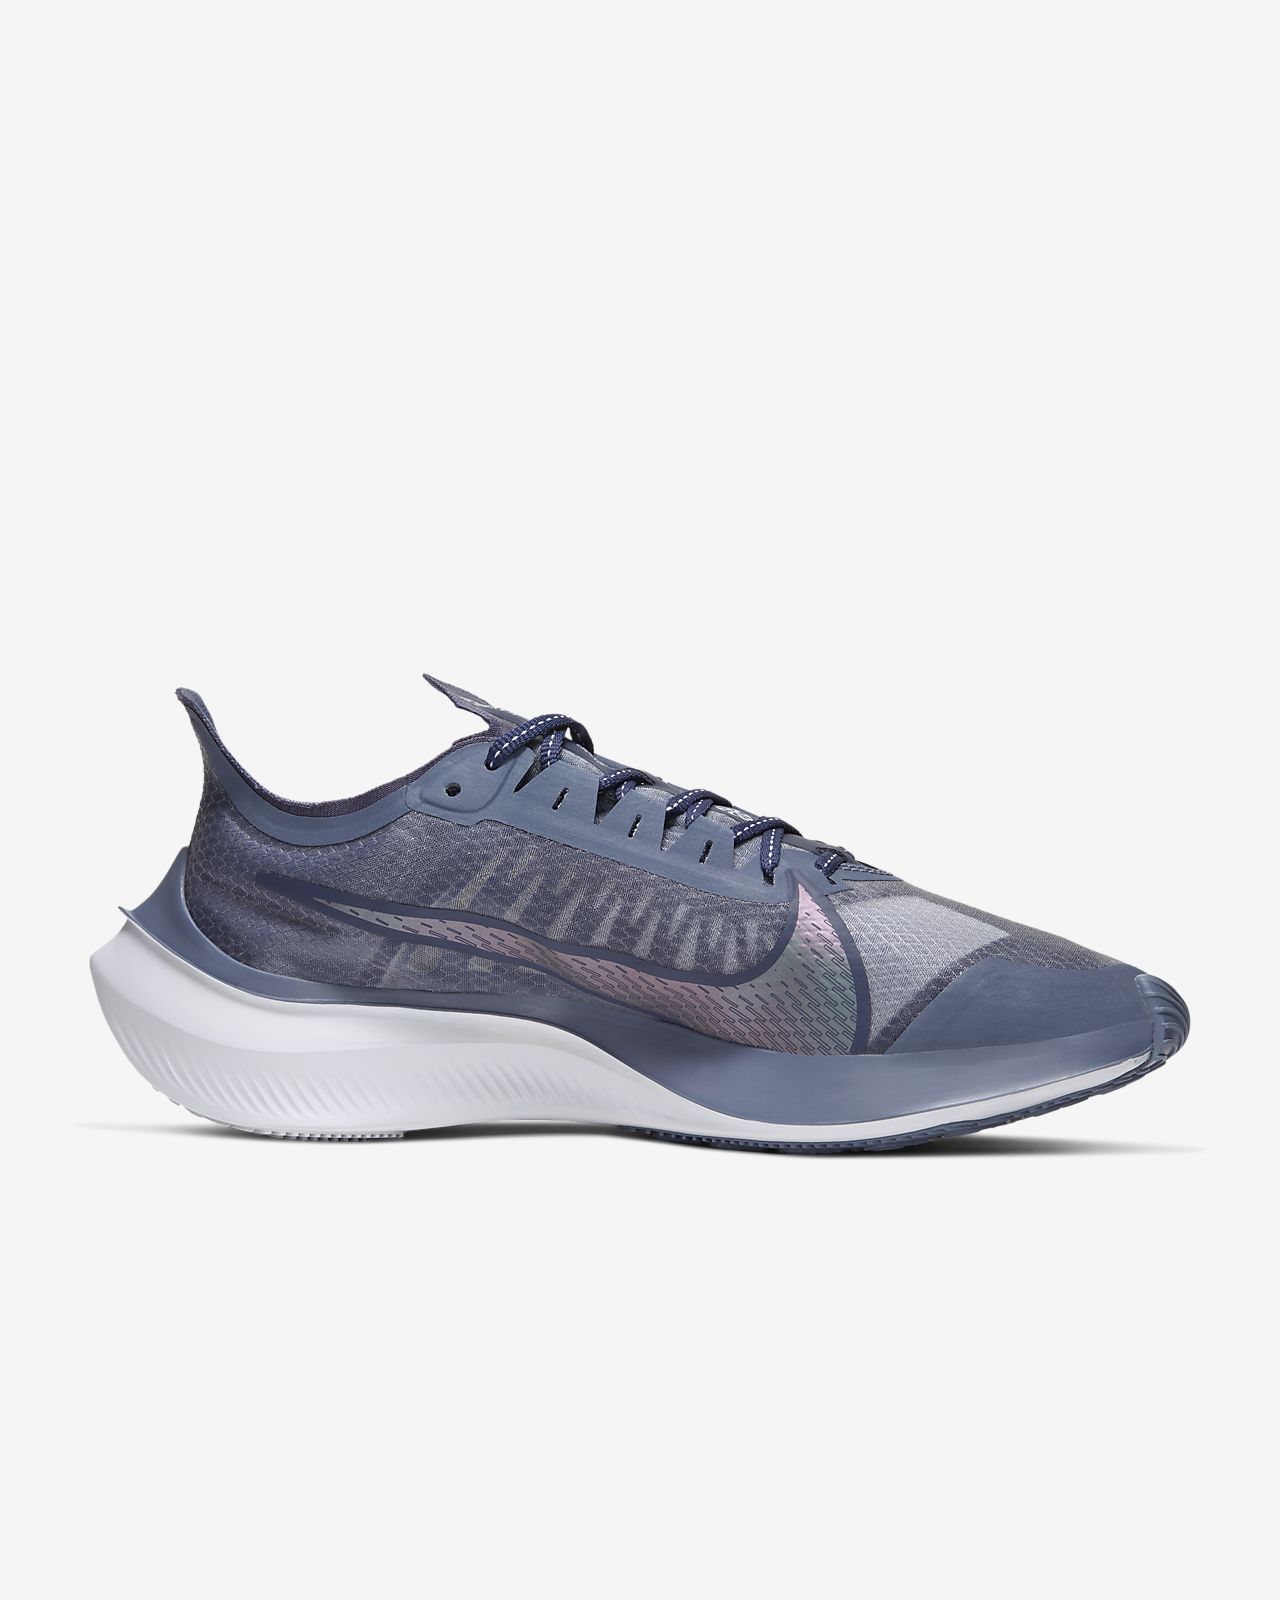 Nike Zoom Gravity Women's Running Shoe 